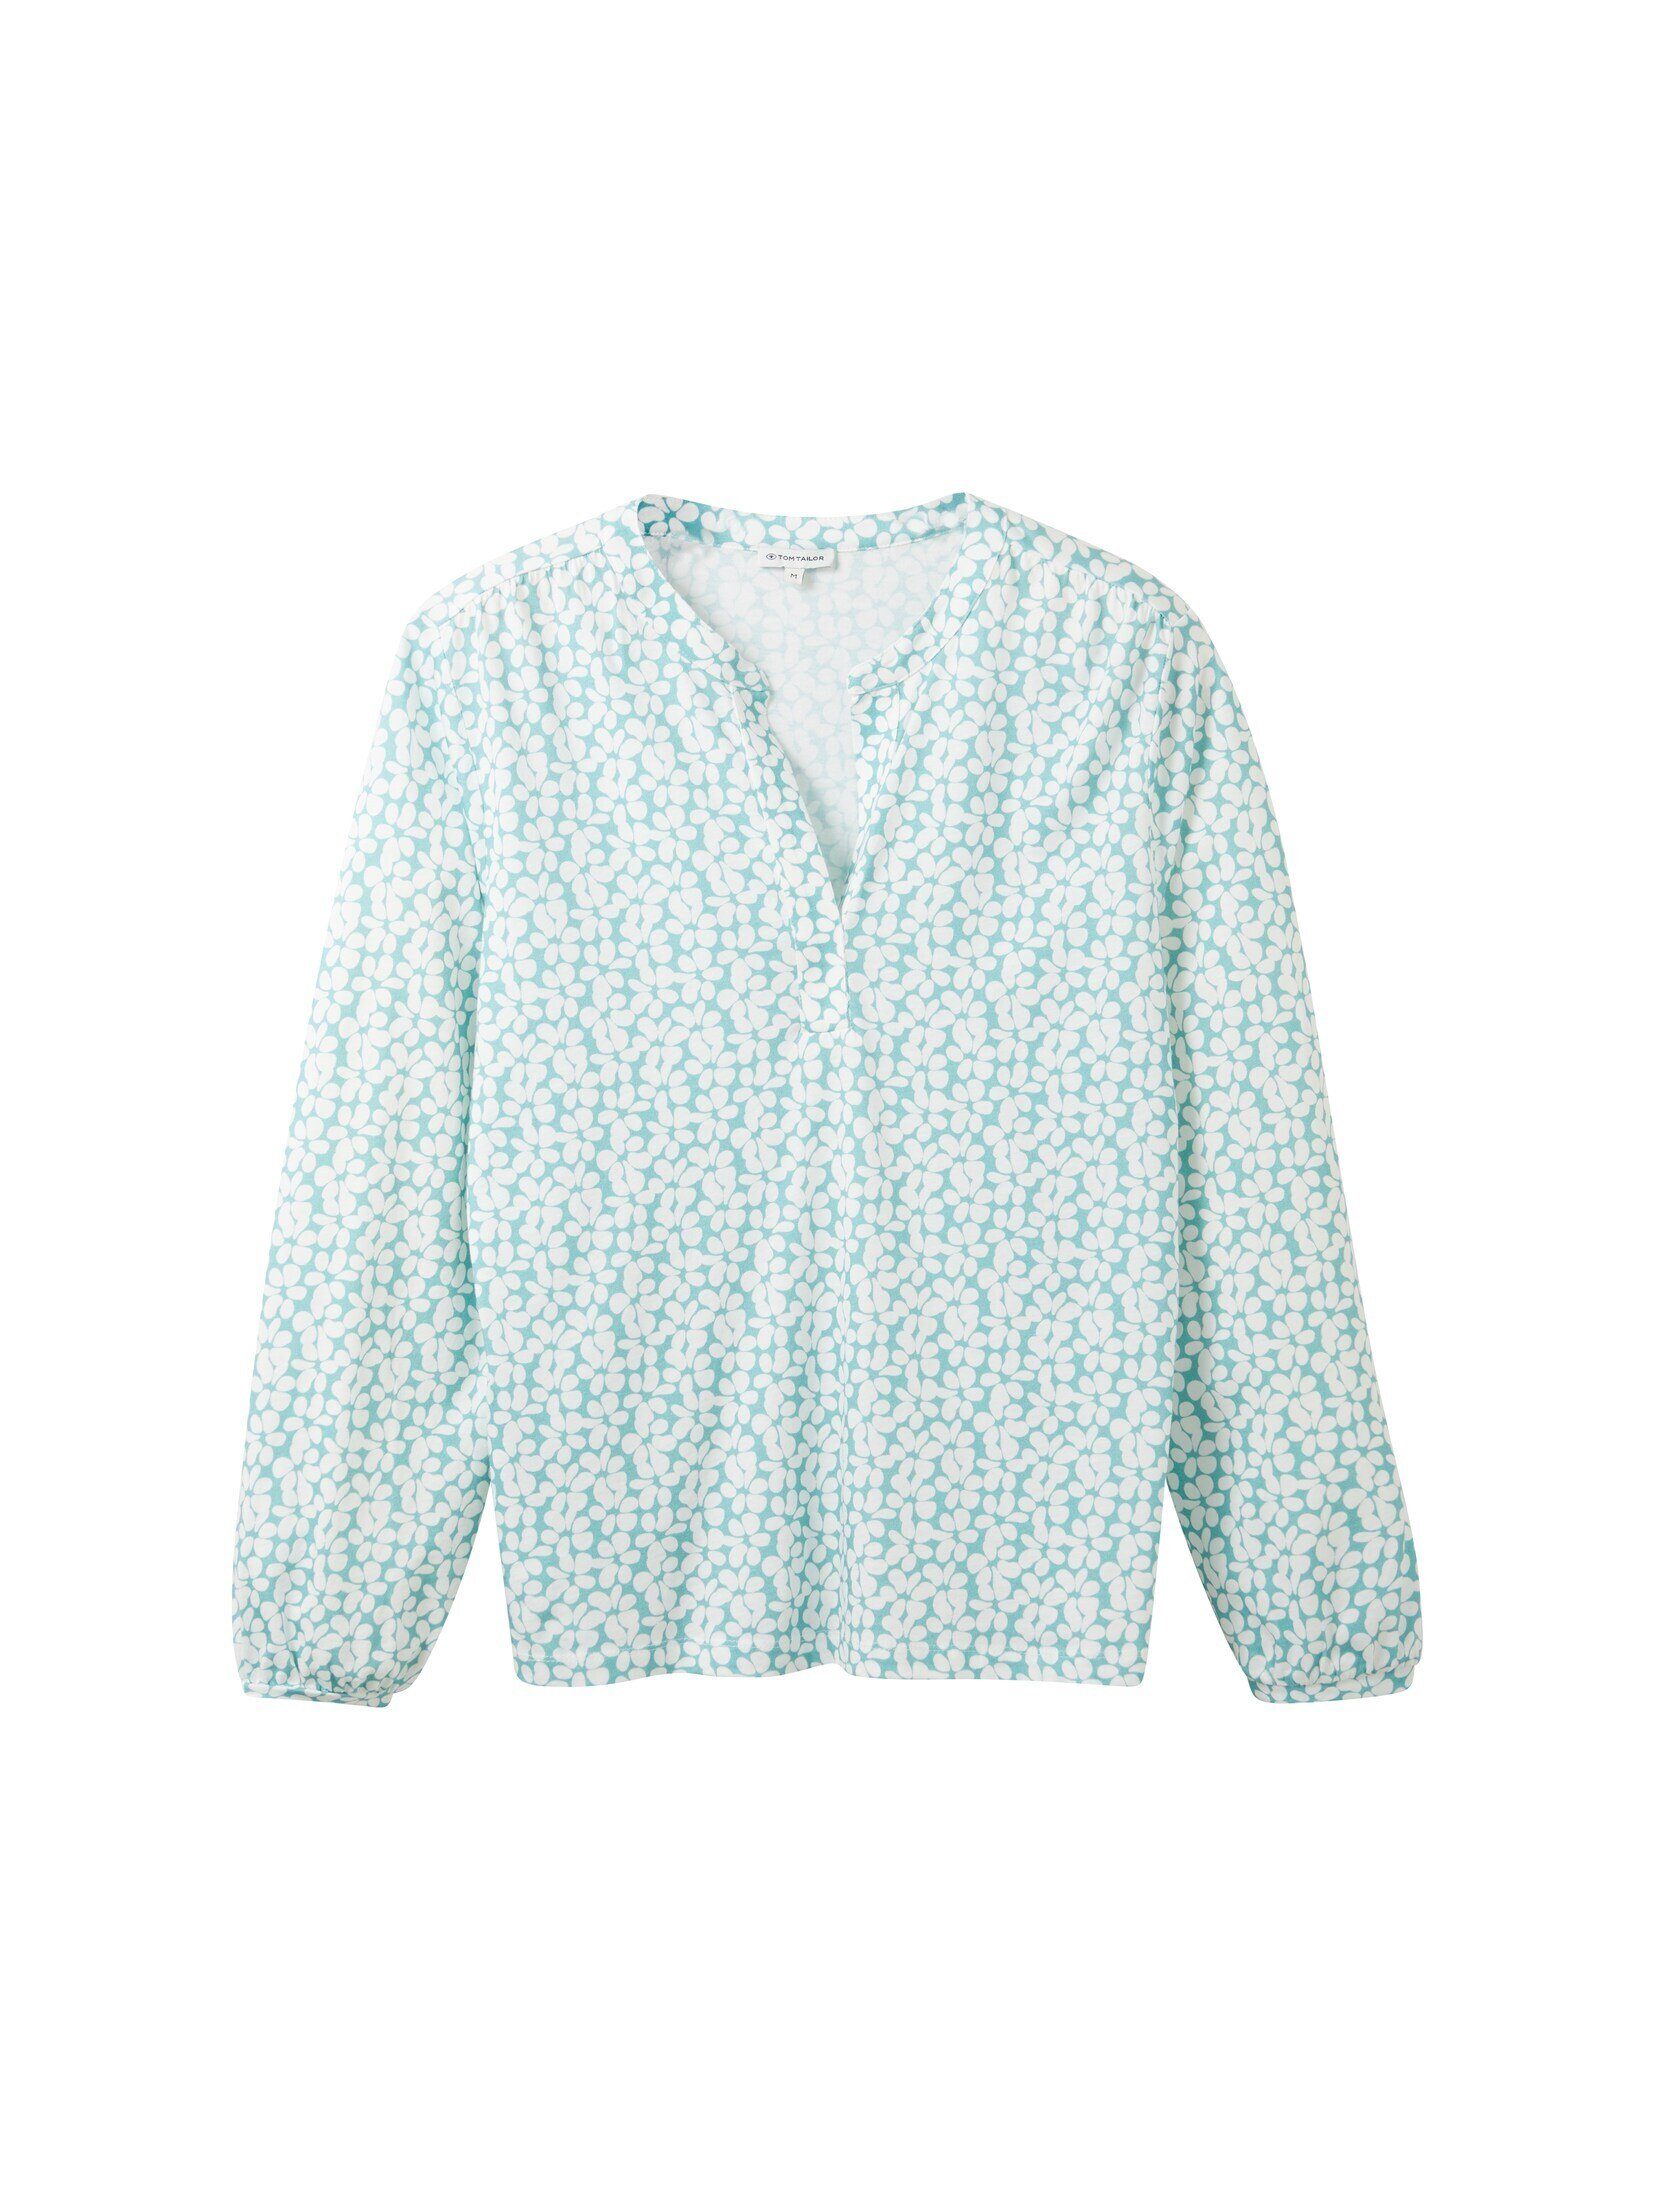 TAILOR design mit T-Shirt TOM teal Bluse floral Allover-Print